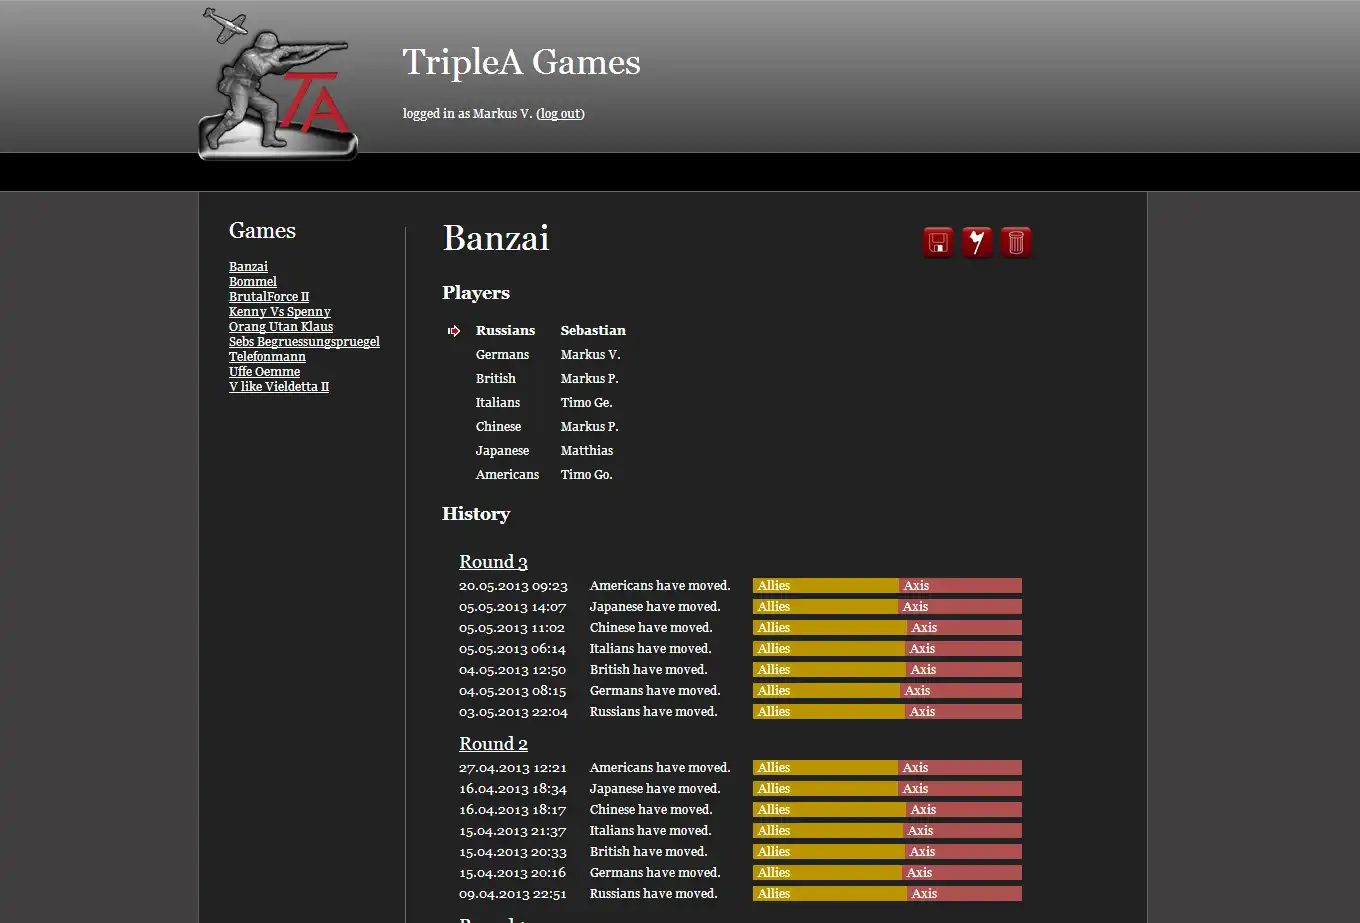 הורד את כלי האינטרנט או את אפליקציית האינטרנט TripleA Game Site להפעלה בלינוקס באופן מקוון